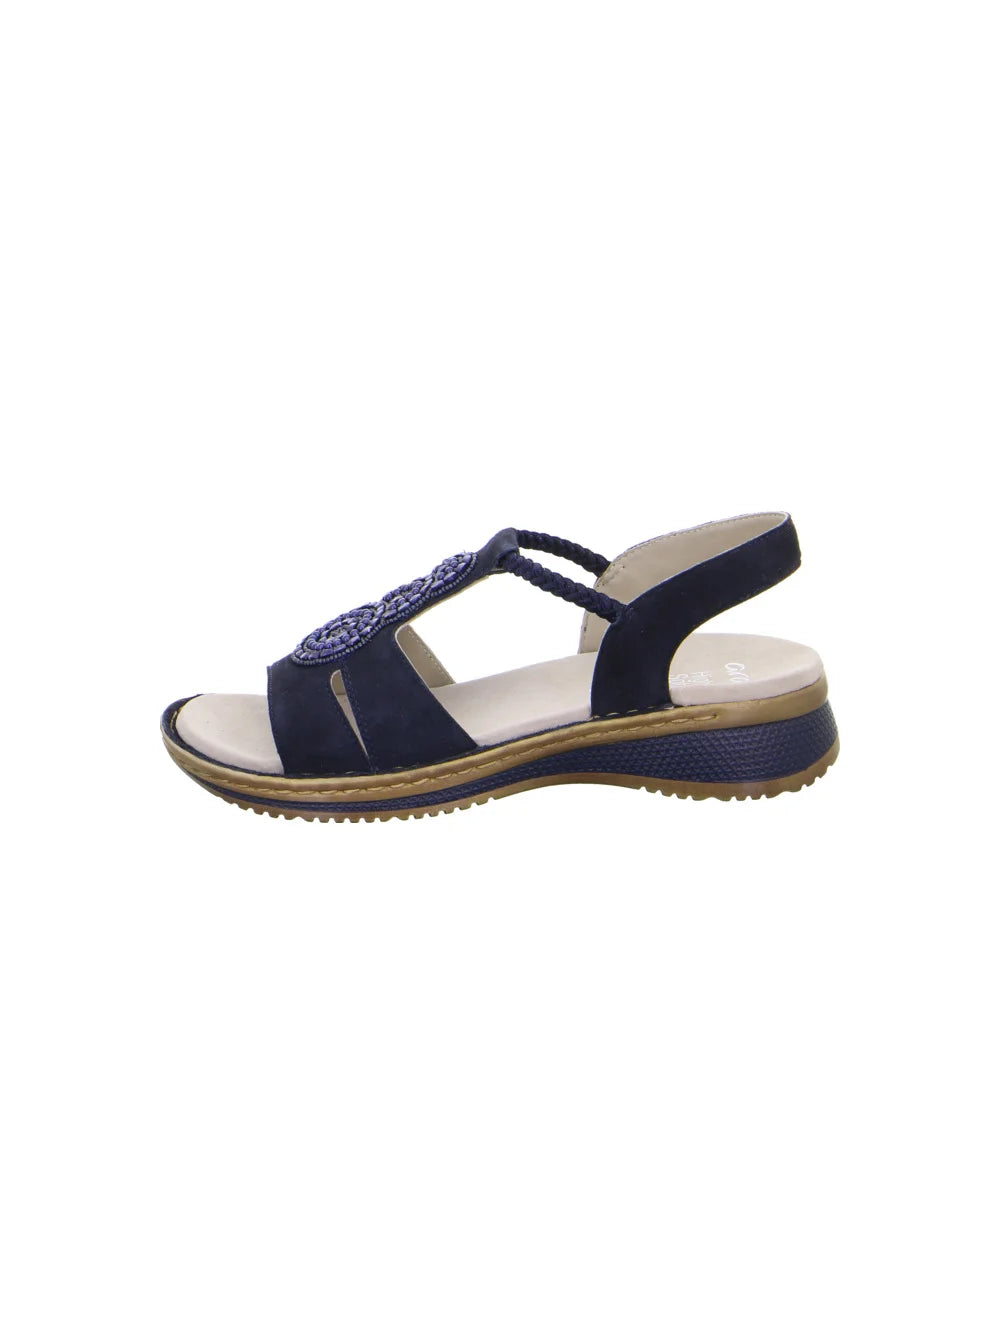 Ara Women's Hawaii 12-29008 Suede Wedge Heel Sandals Blue